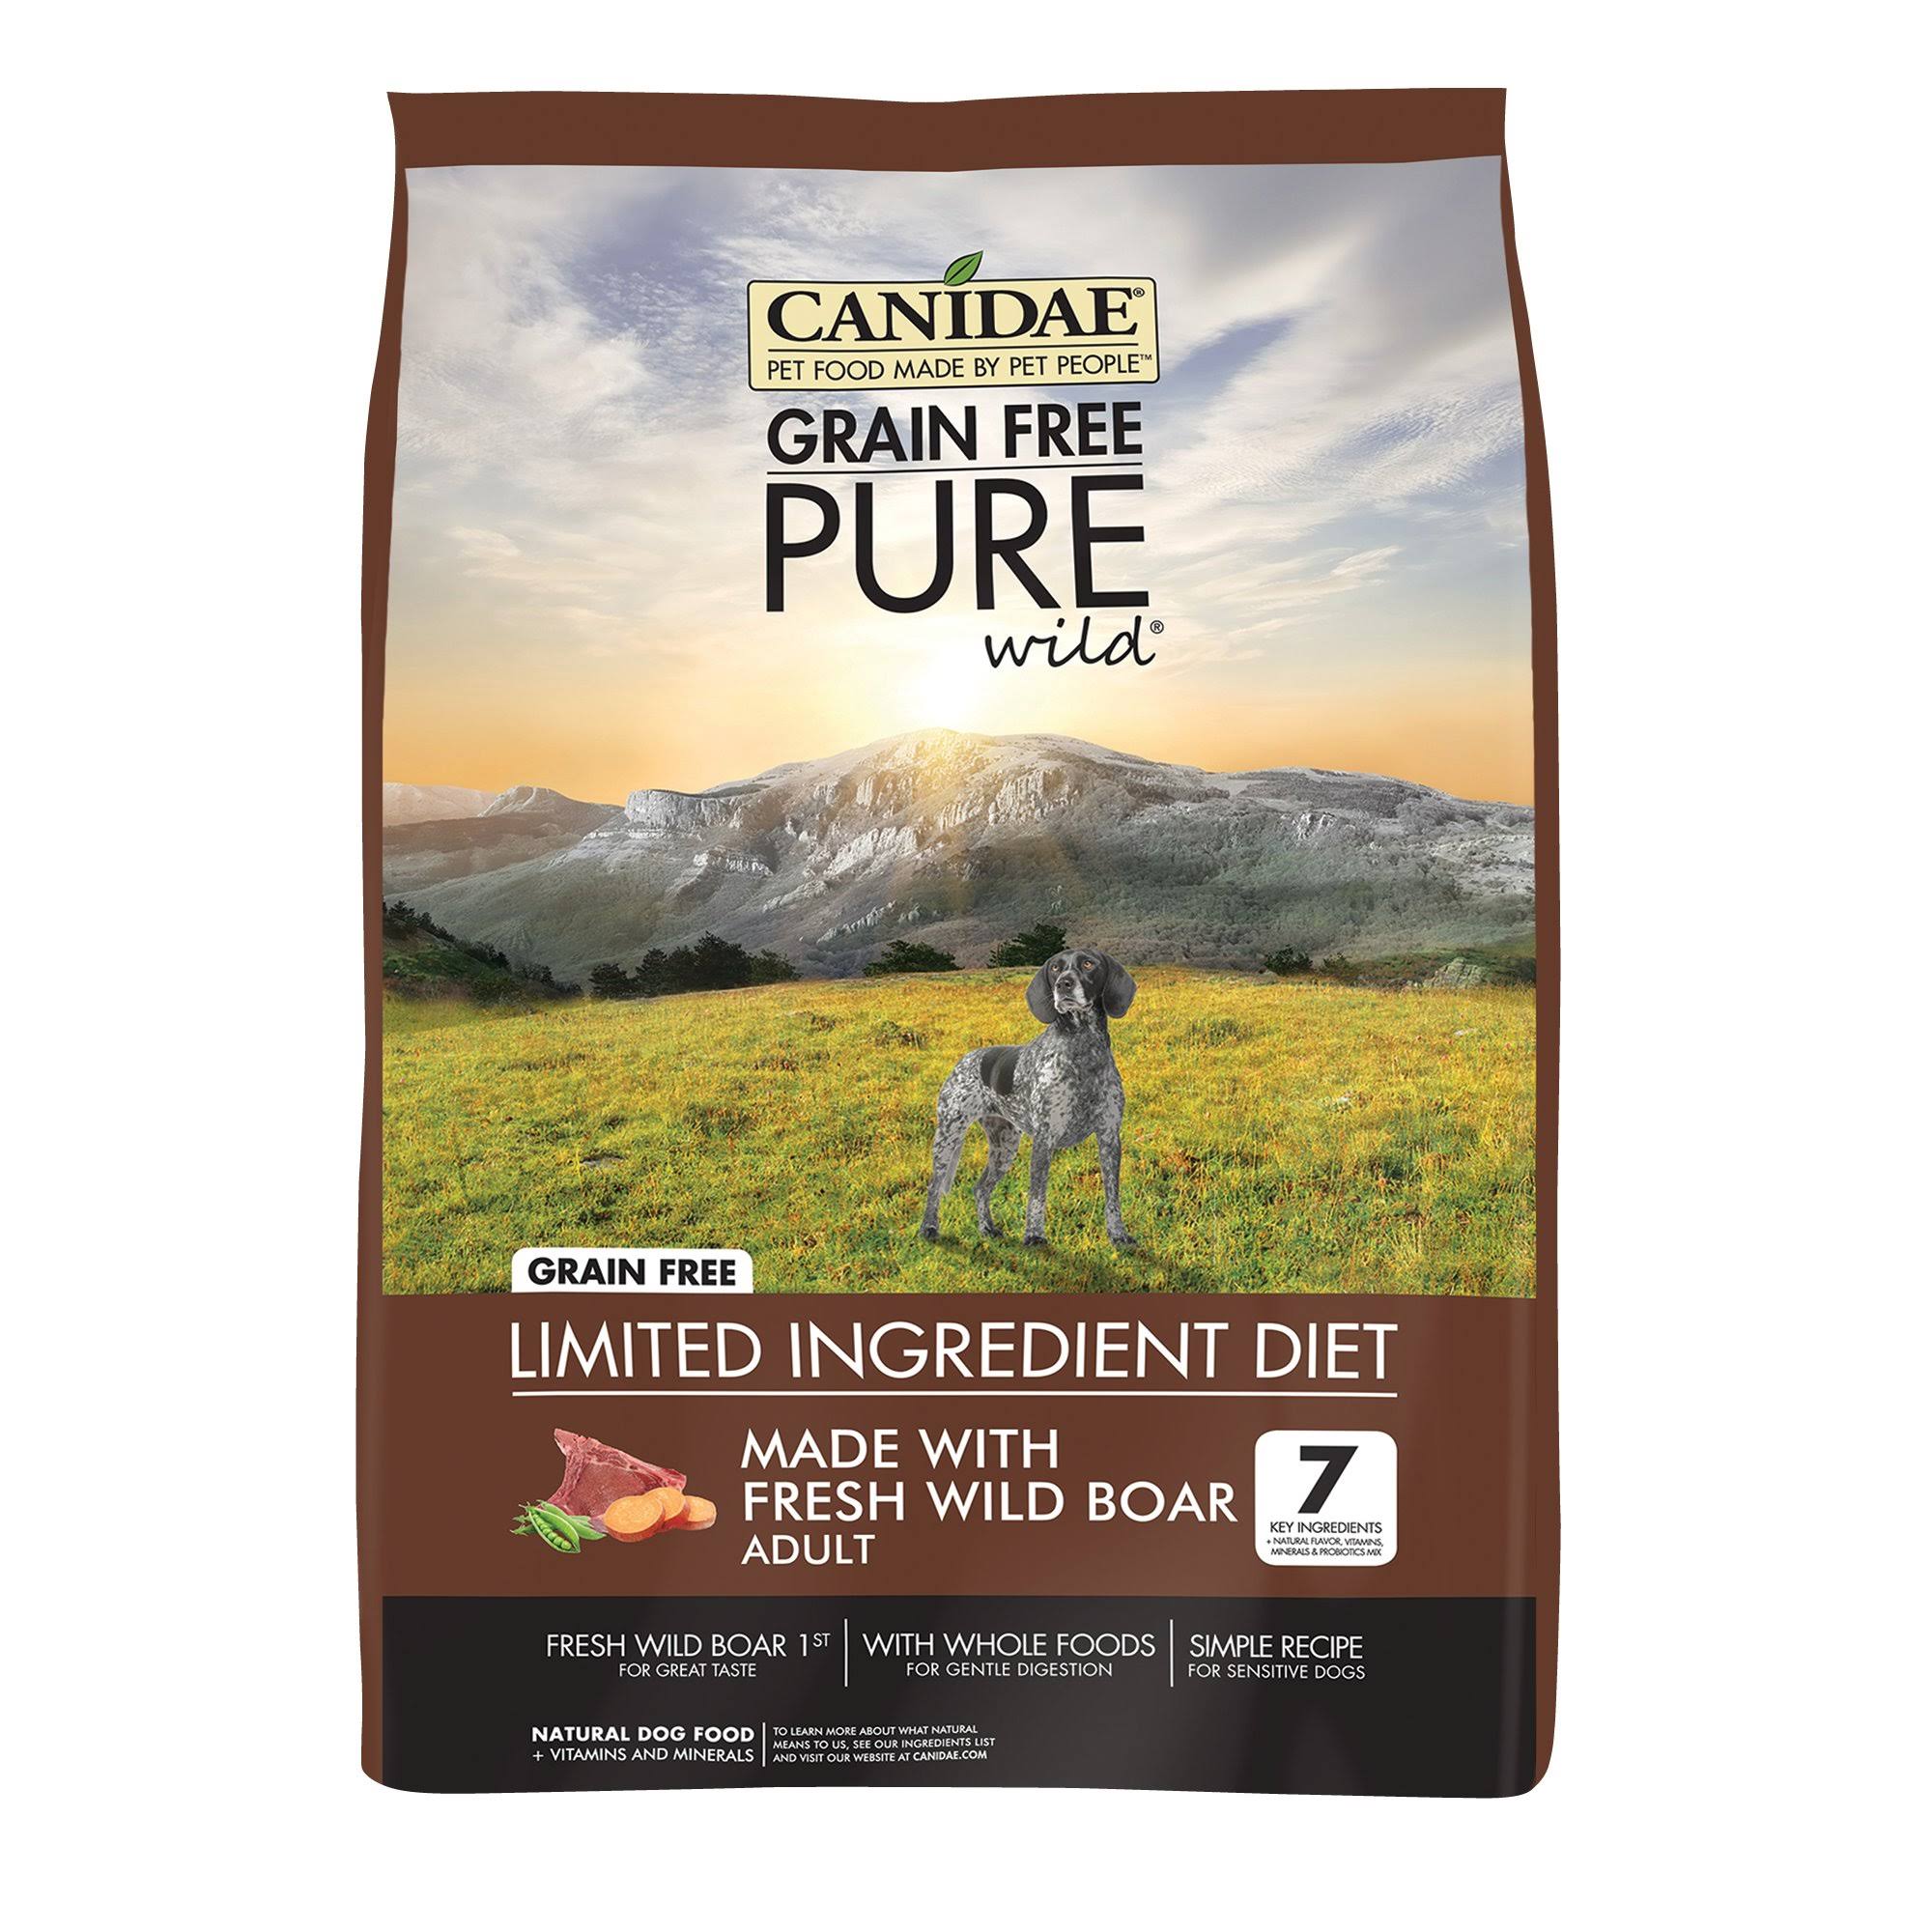 Canidae Grain Free Pure Wild Adult Dog Formula Food - Fresh Wild Boar, 24 lb